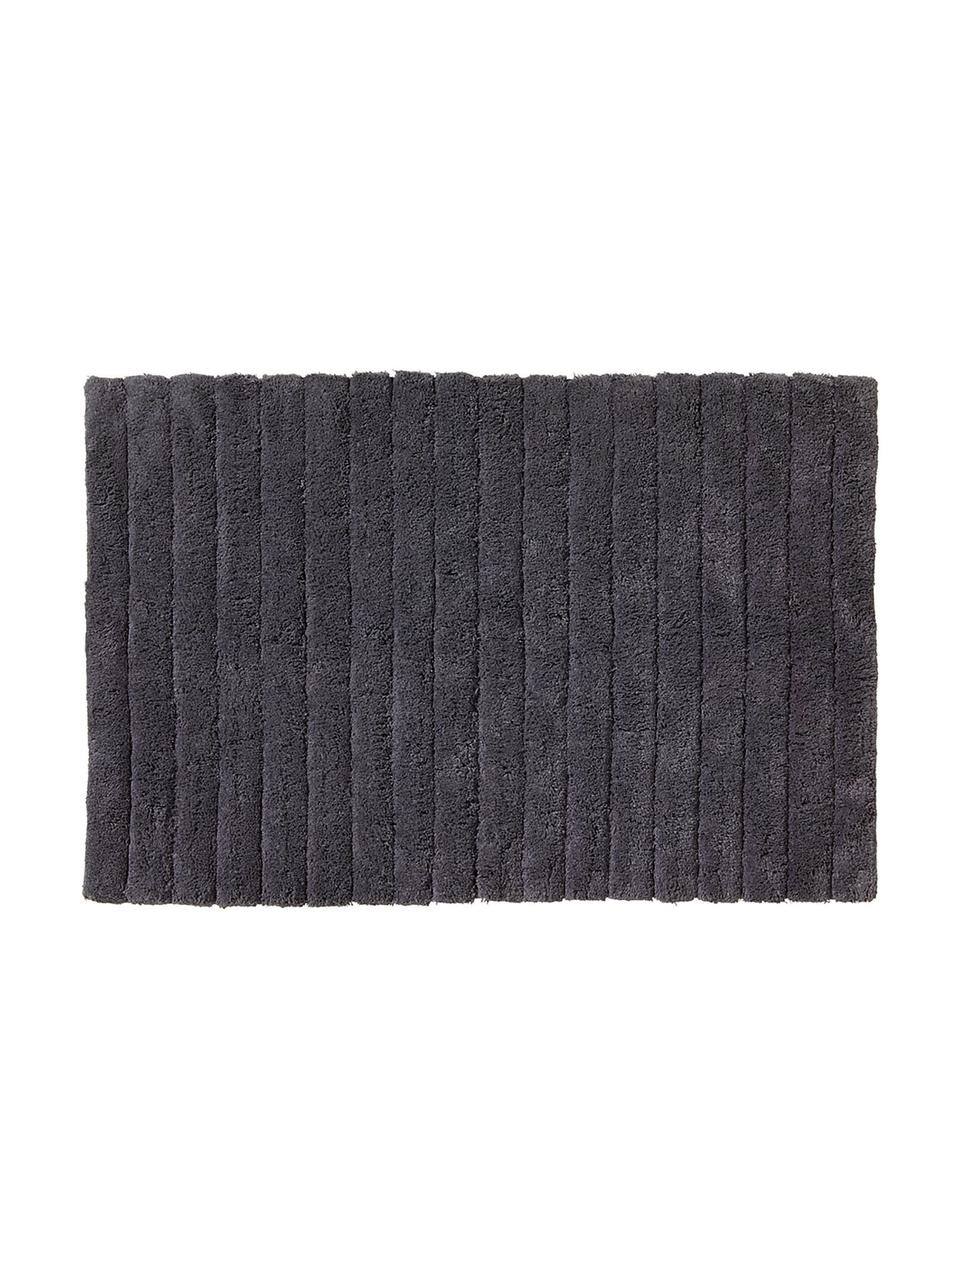 Tapis de bain moelleux gris foncé Board, Coton,
qualité supérieure, 1 900 g/m², Gris graphite, larg. 60 x long. 90 cm